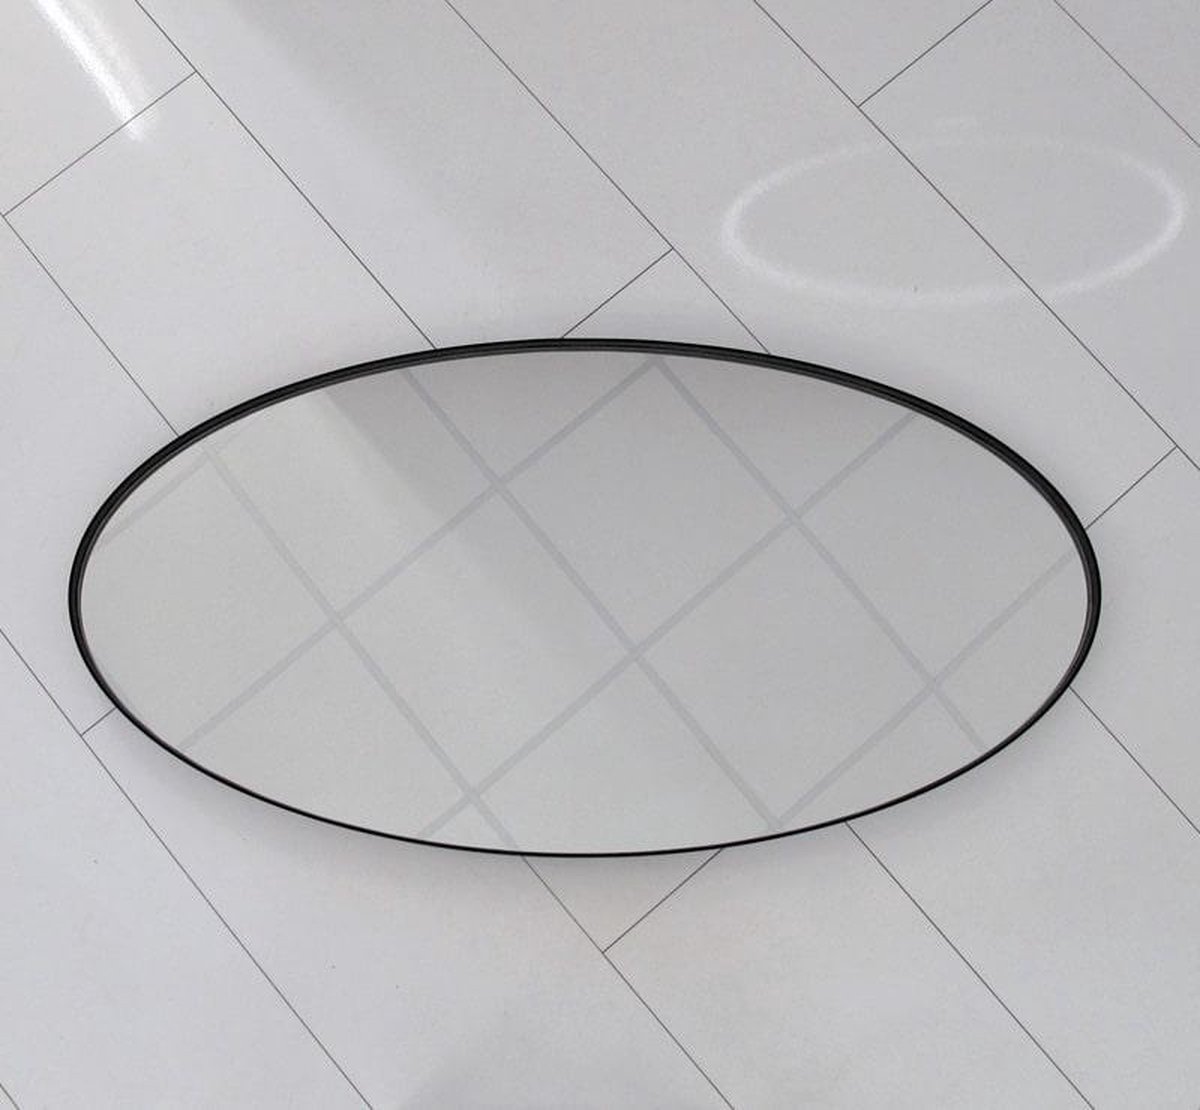 Ovalen badkamerspiegel met mat zwart frame 100x60 cm